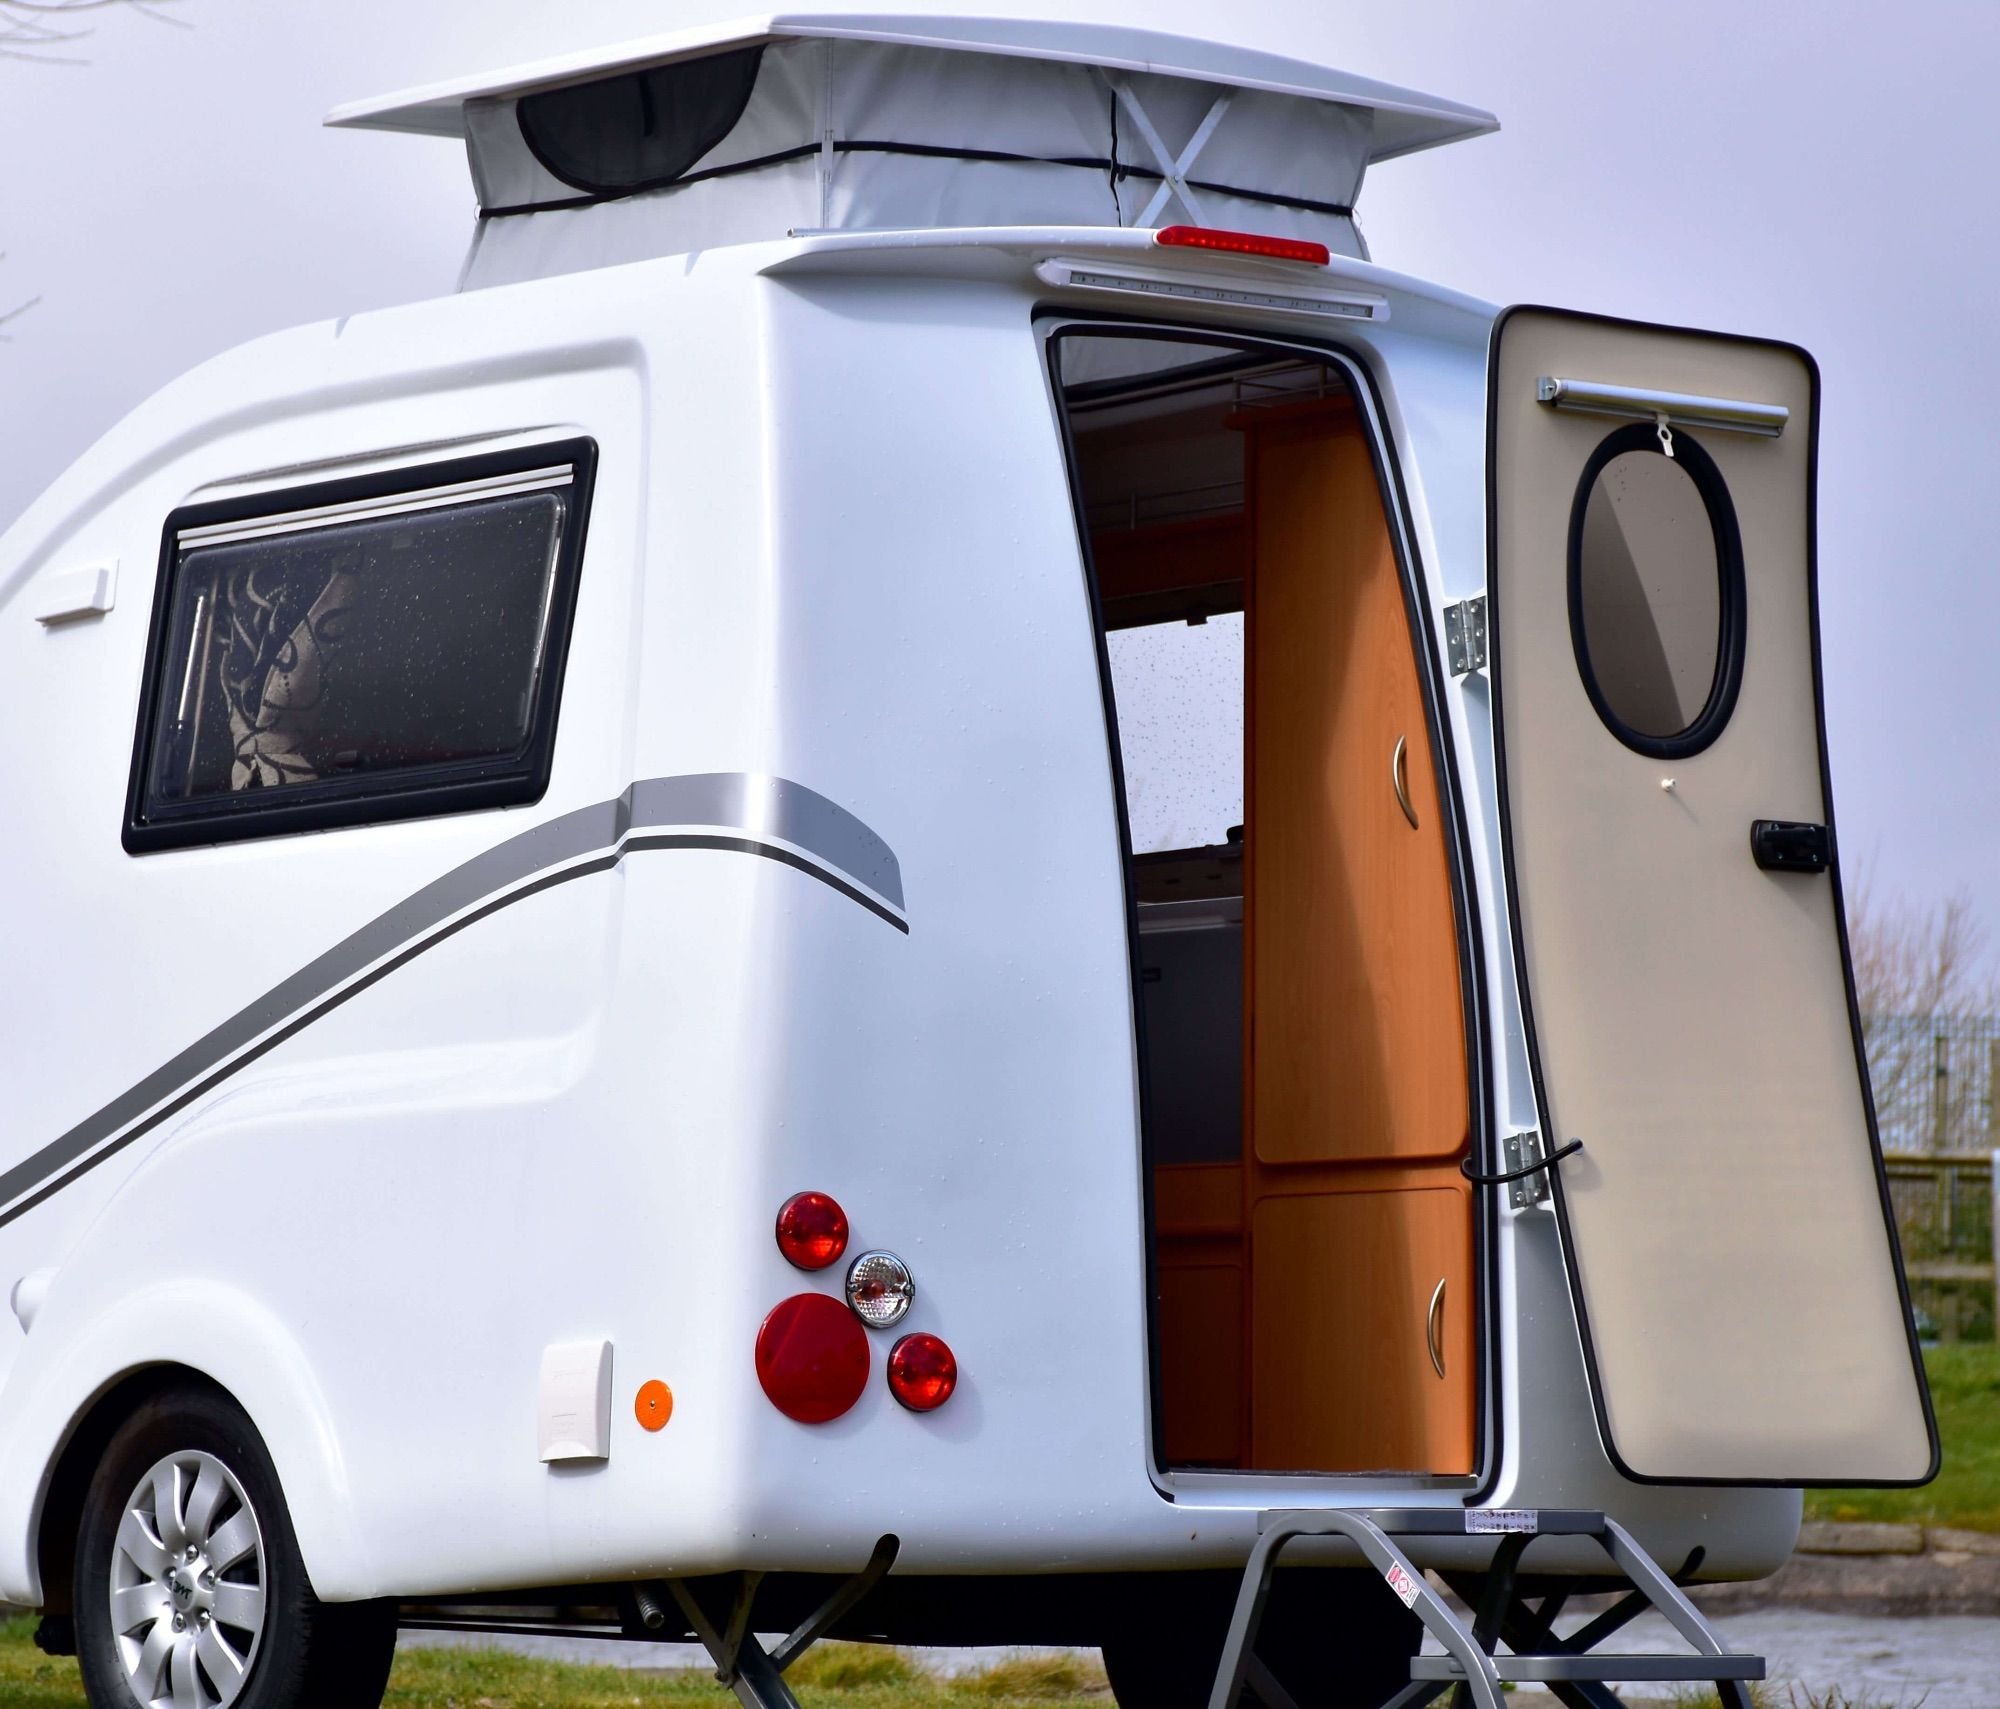 Мини кемпер. Мини Караван мини кемпер. Микро кемпер автодом. Micro Camper van. Go pods - Micro Tourer Caravans.